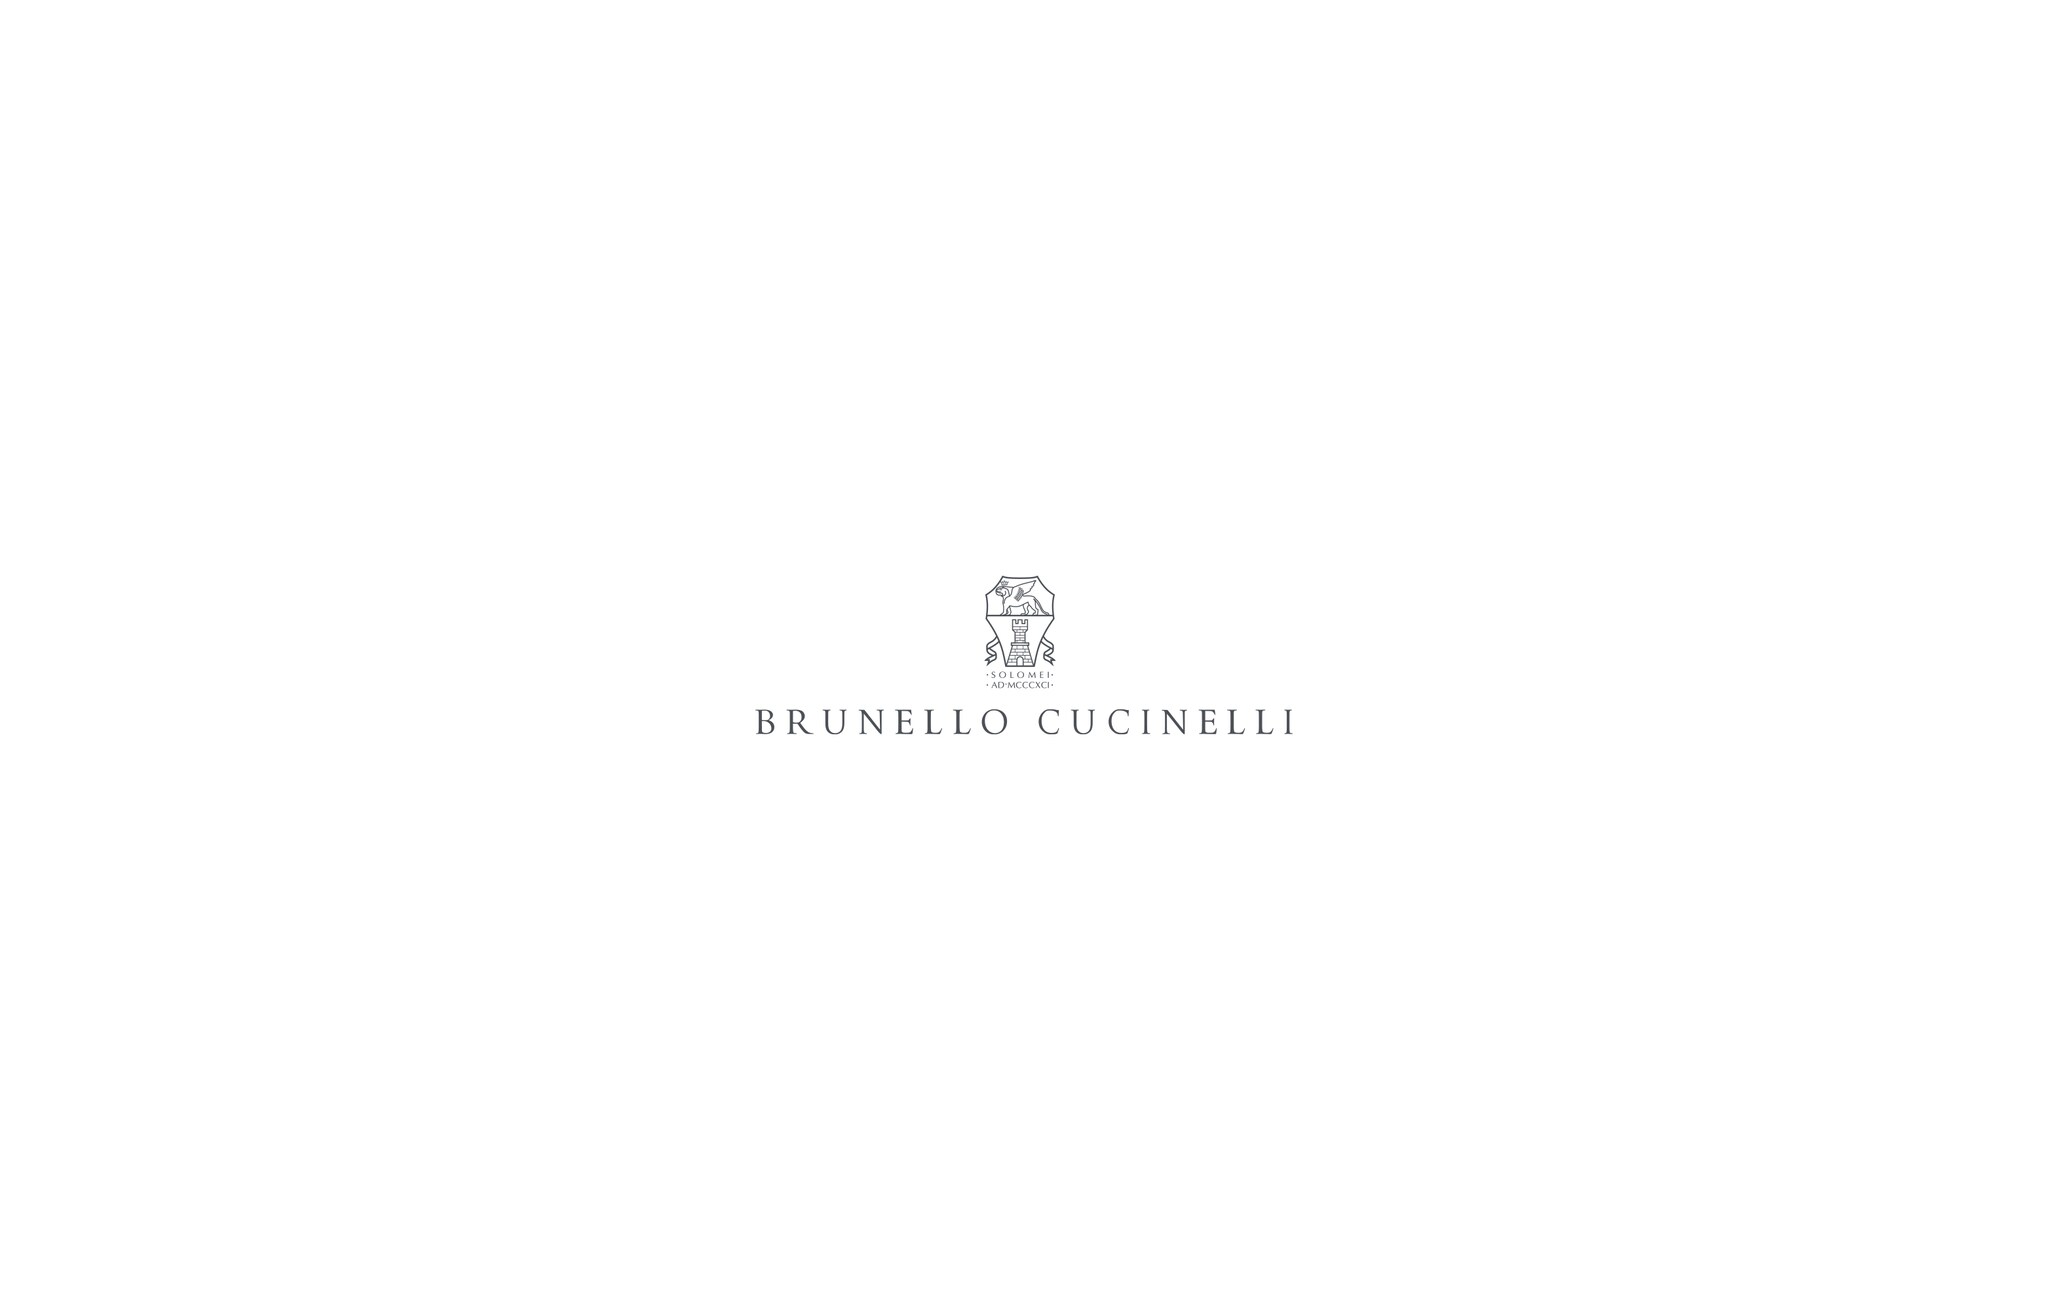  Alpaca cardigan Beige Woman - Brunello Cucinelli 